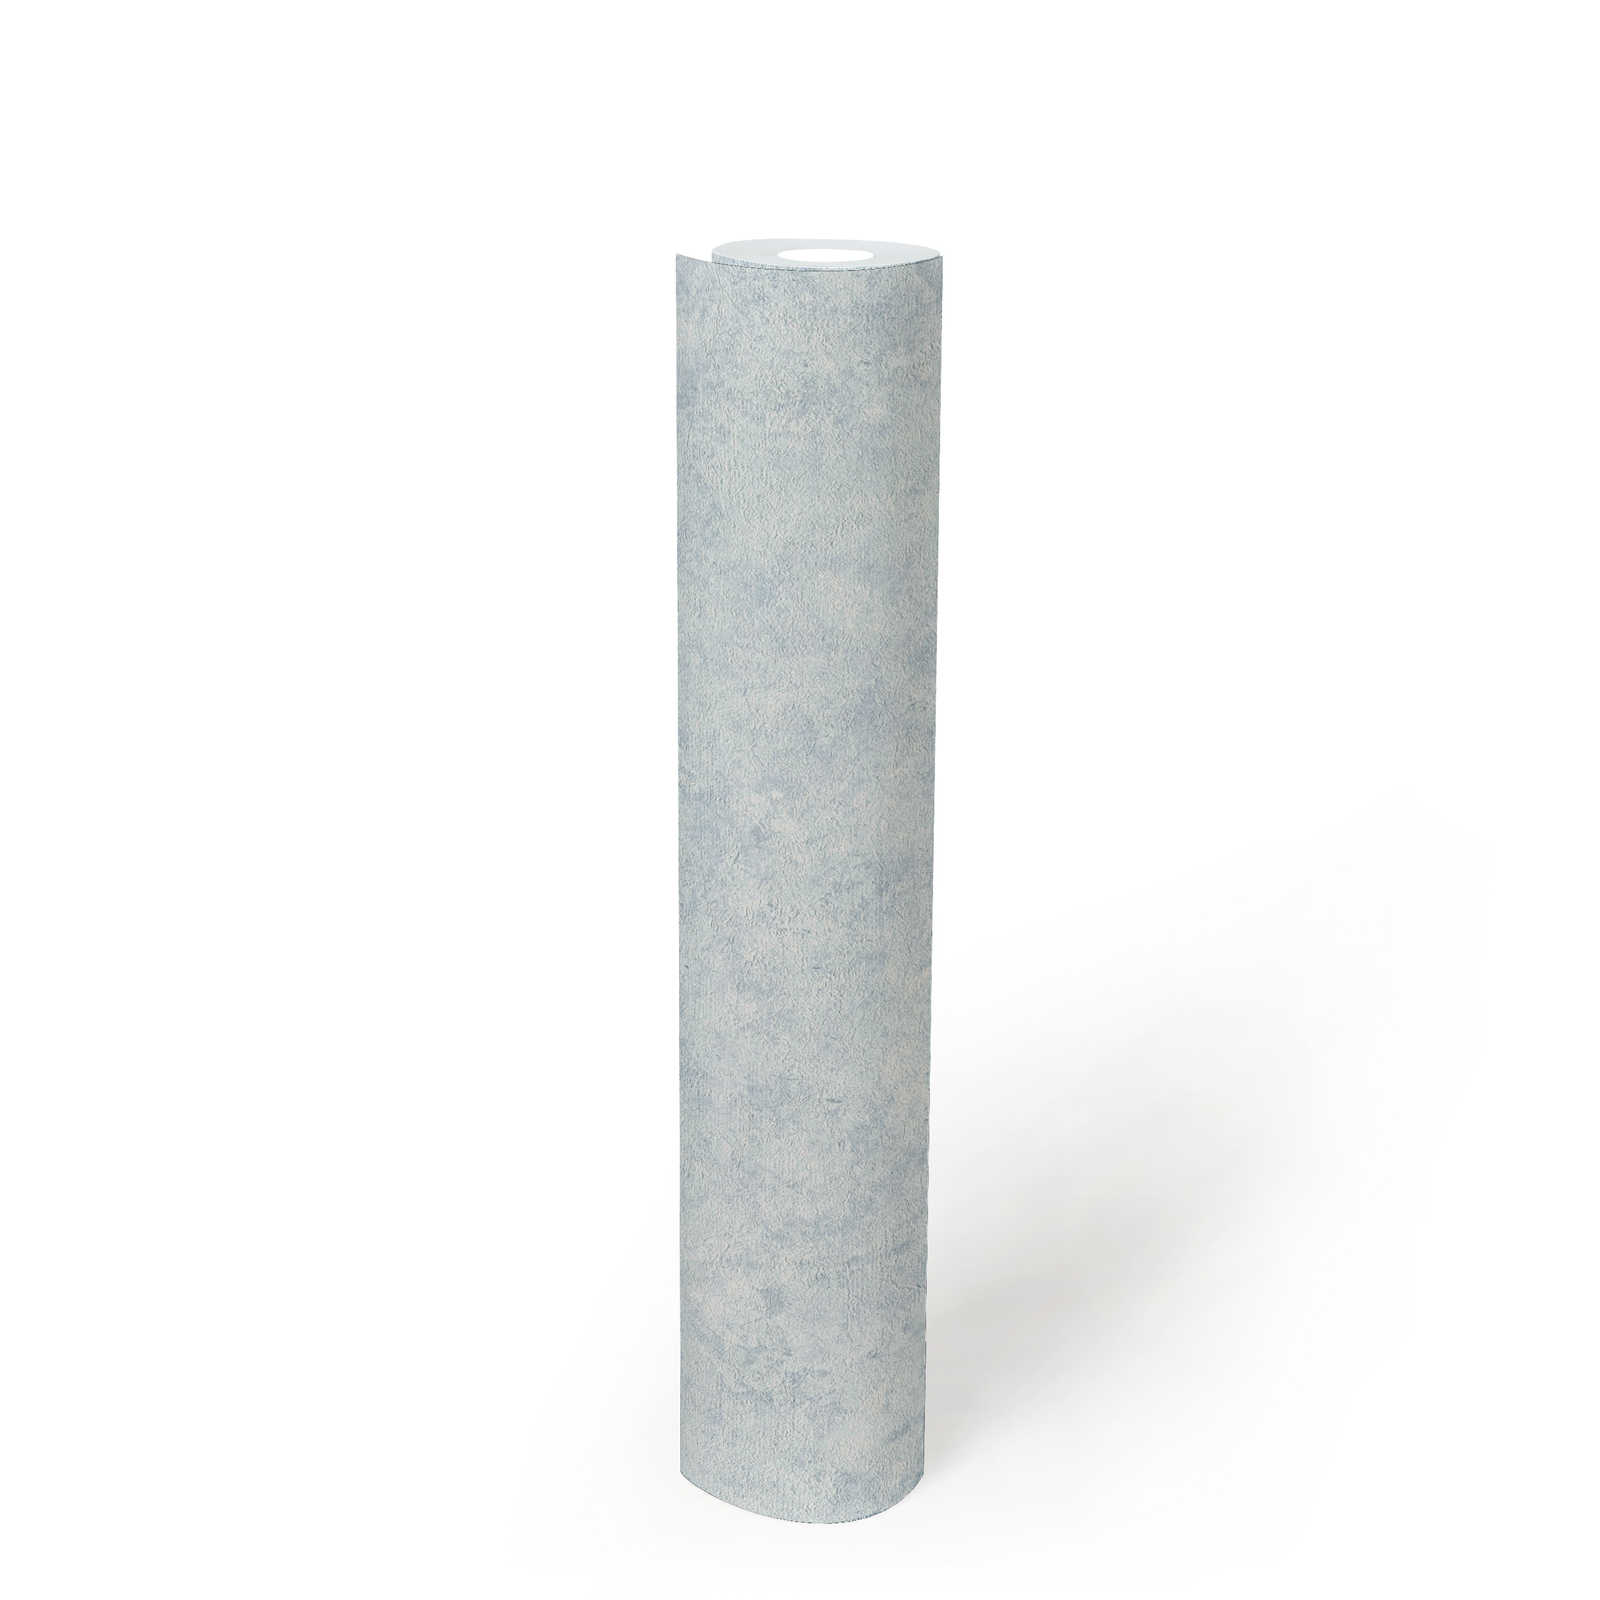             Plain textured wallpaper in a subtle colour - blue, white
        